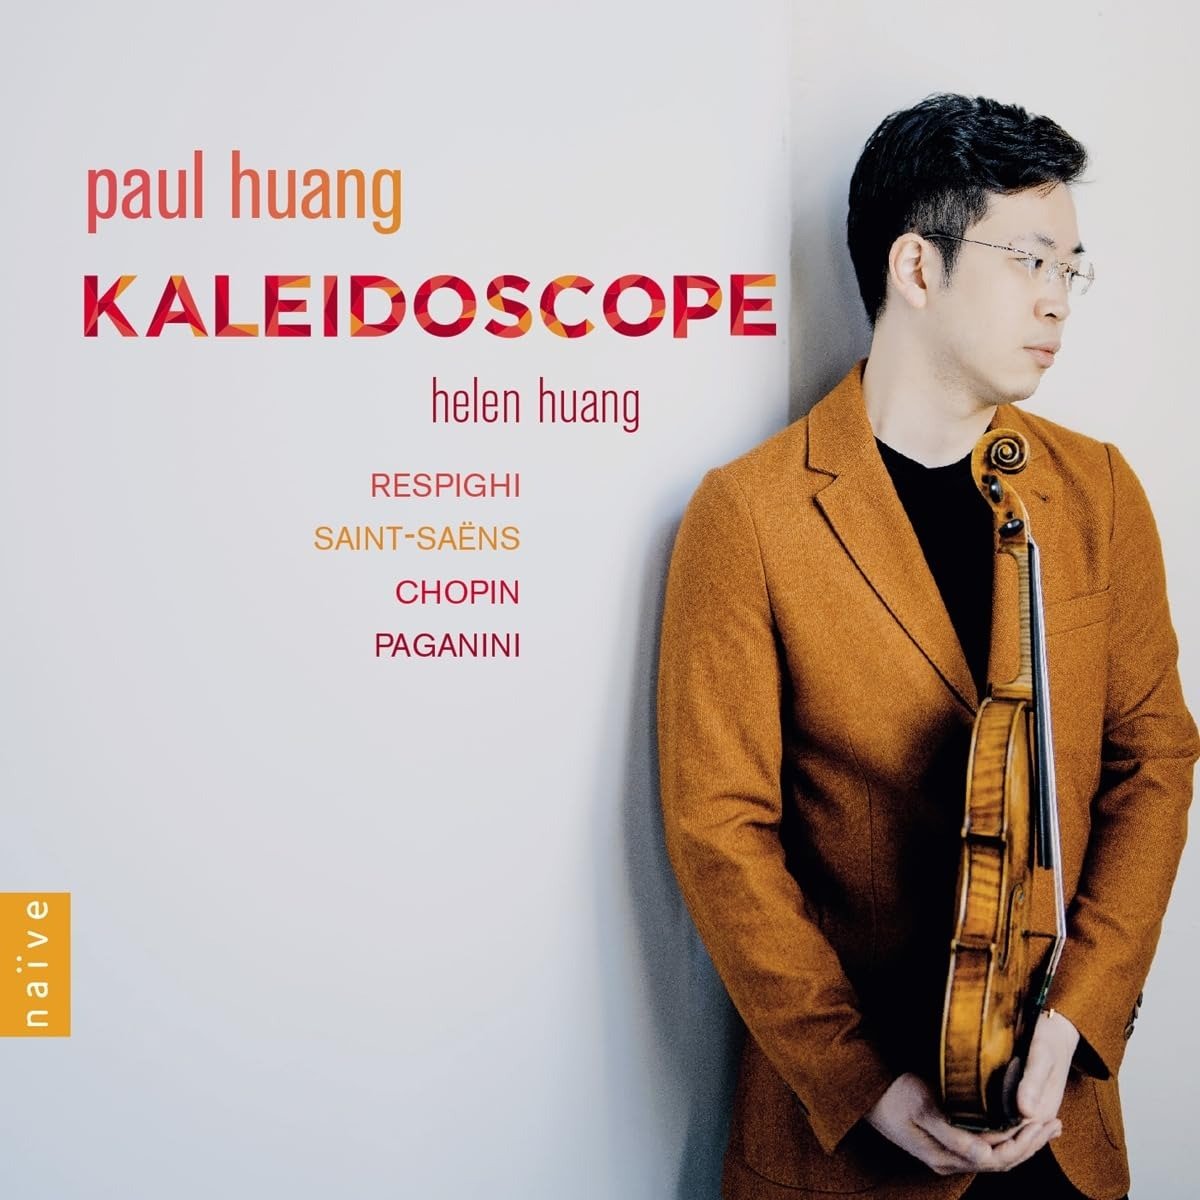 CD Shop - HUANG, PAUL & HELEN KALEIDOSCOPE